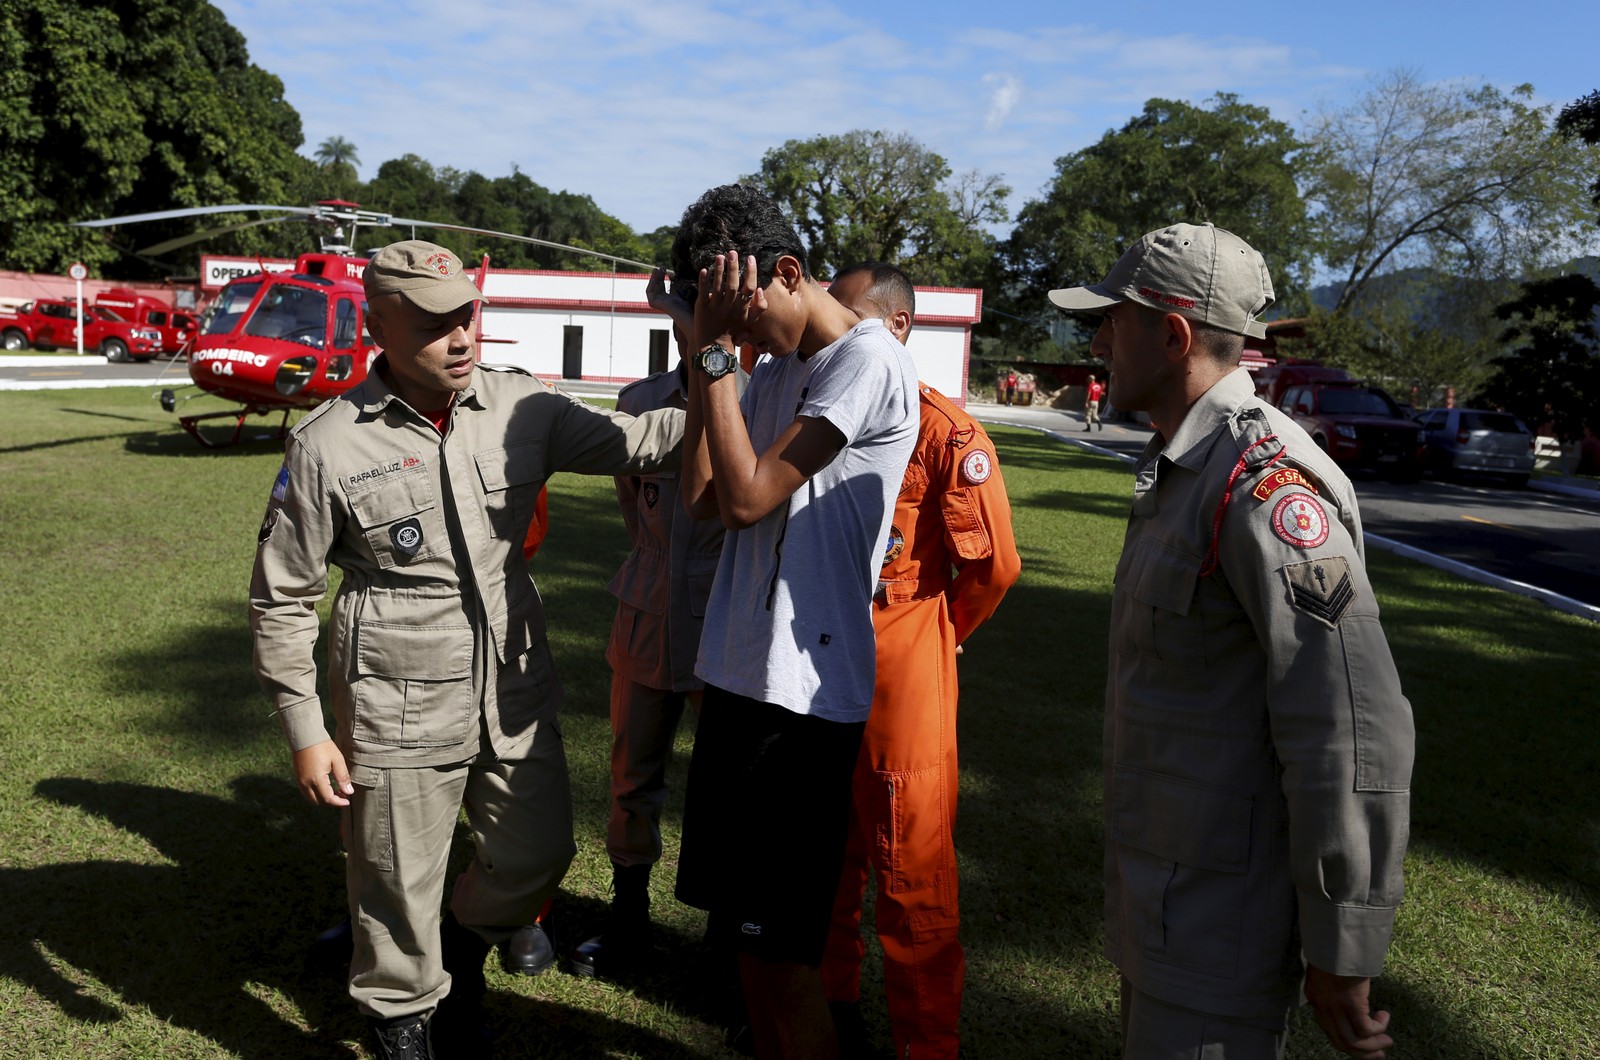 Comovido, Christhian chora ao relembrar do acidente e conhecer envolvidos em seu resgate — Foto: Fabiano Rocha/Agência O Globo